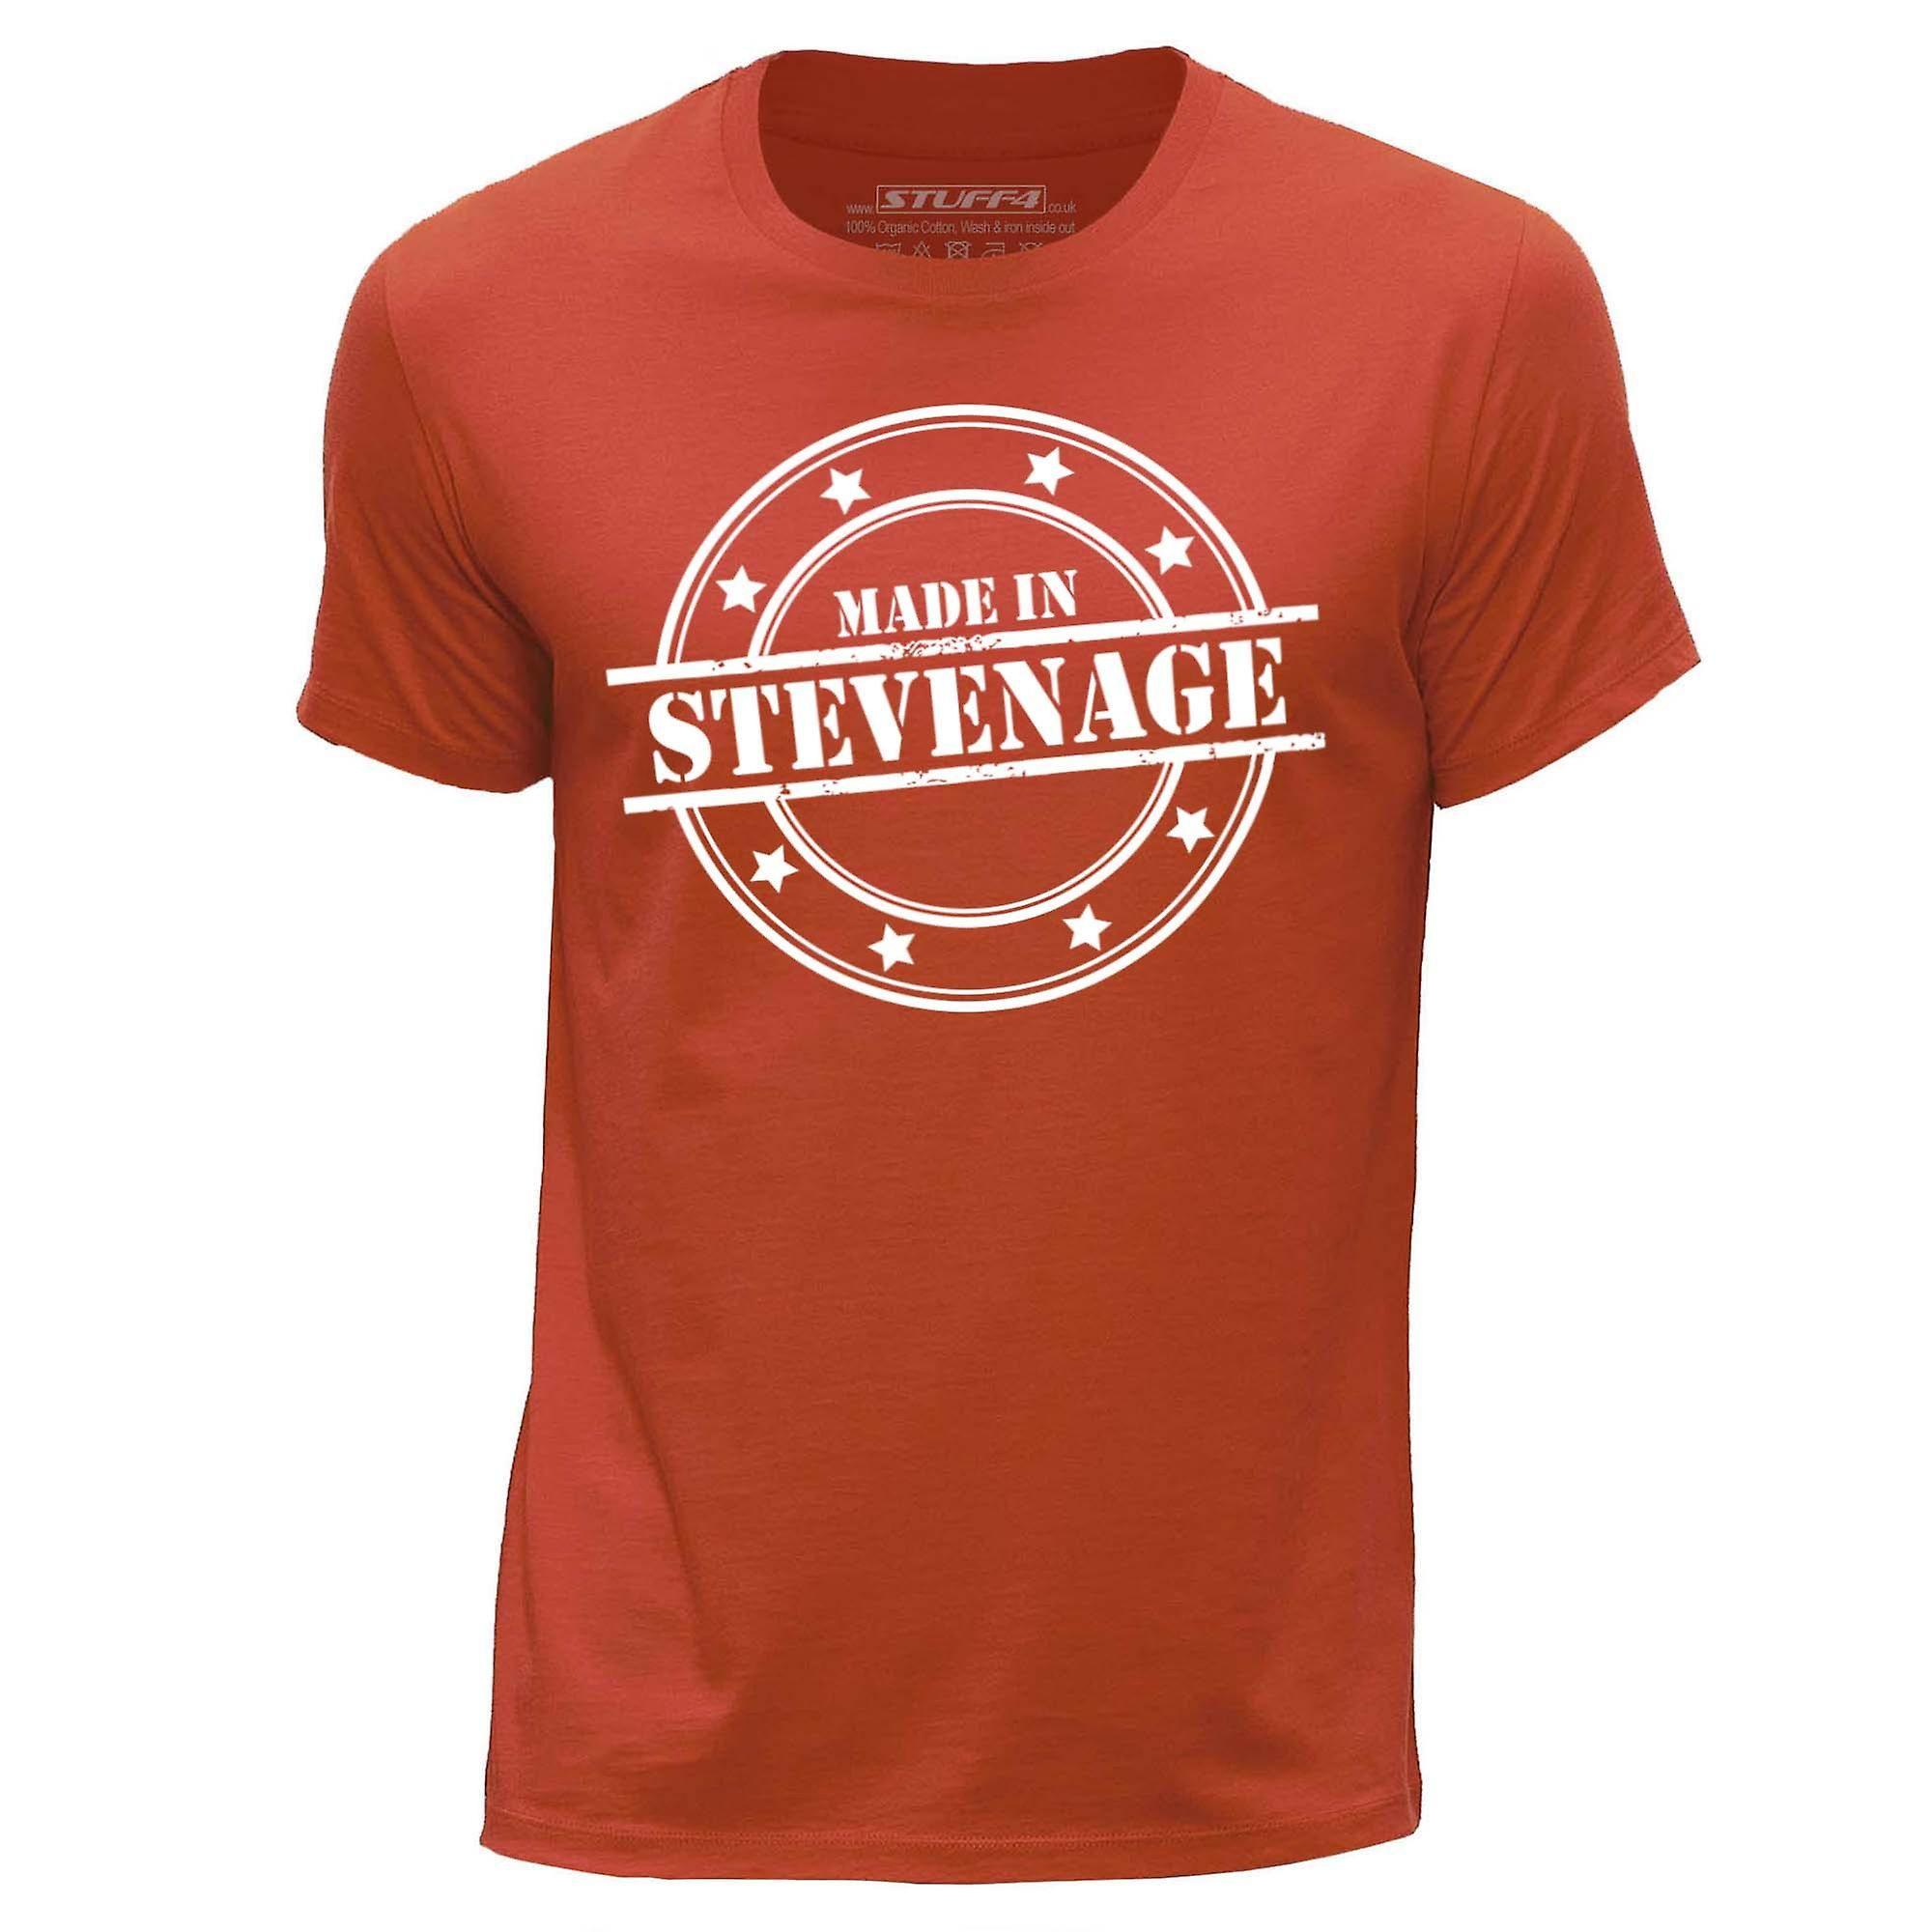 Orange Round Logo - STUFF4 Men's Medium (M) Orange Round Neck T-Shirt/Made In Stevenage ...